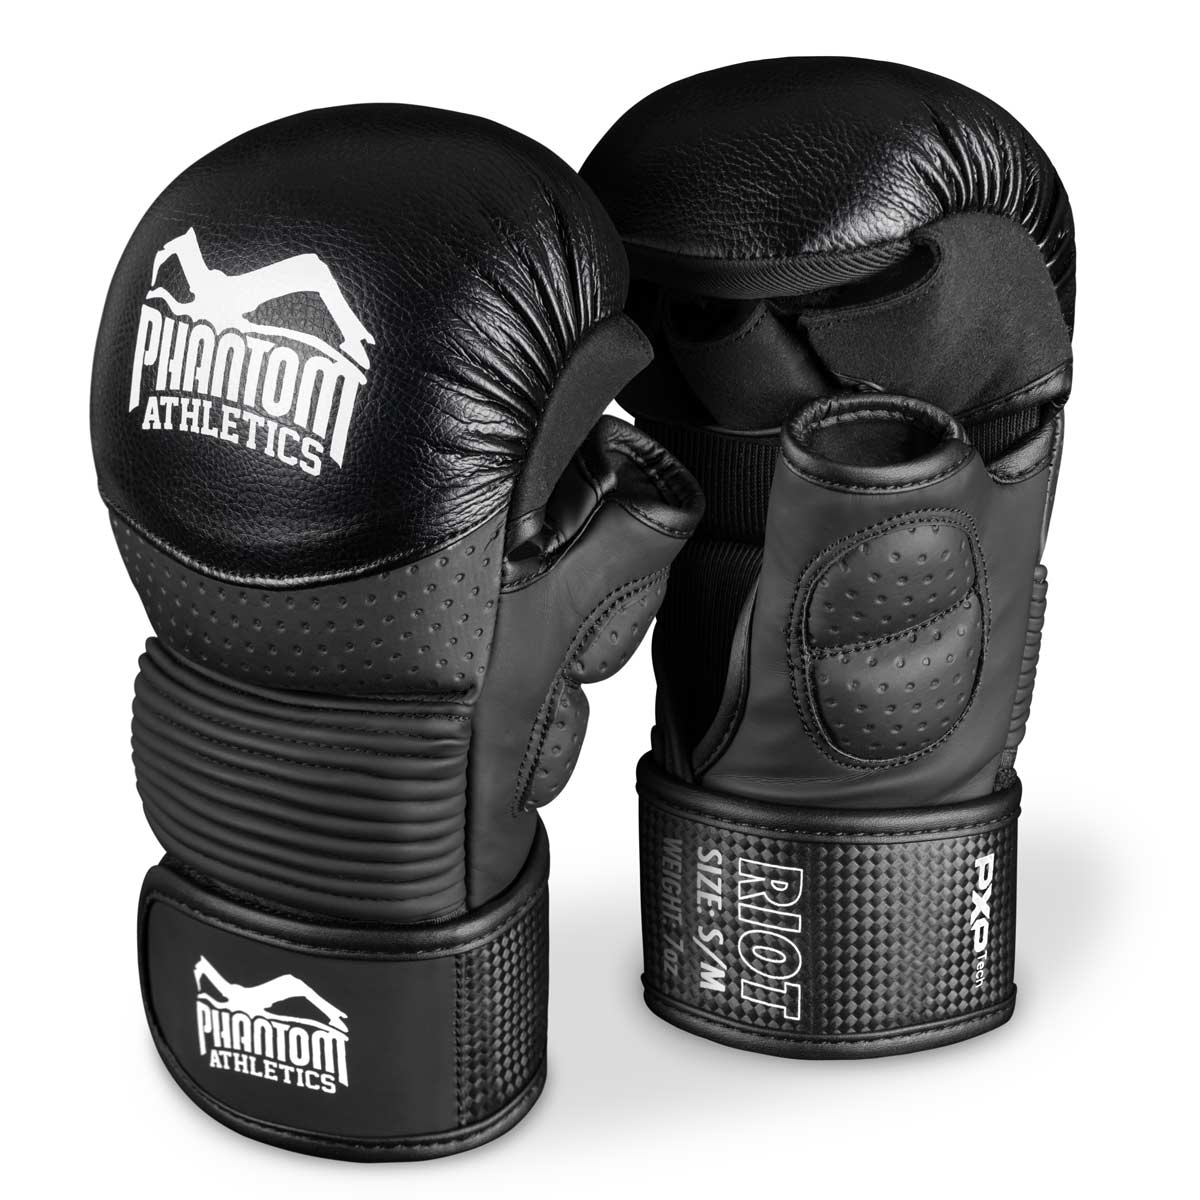 Phantom RIOT PRO MMA sparing rukavice. Idealno za vaše treninge borilačkih vještina i amaterska takmičenja. Najkvalitetnije i najsigurnije MMA rukavice na tržištu. Savršeno pristajanje i vrhunski kvalitet za trening i sparing.